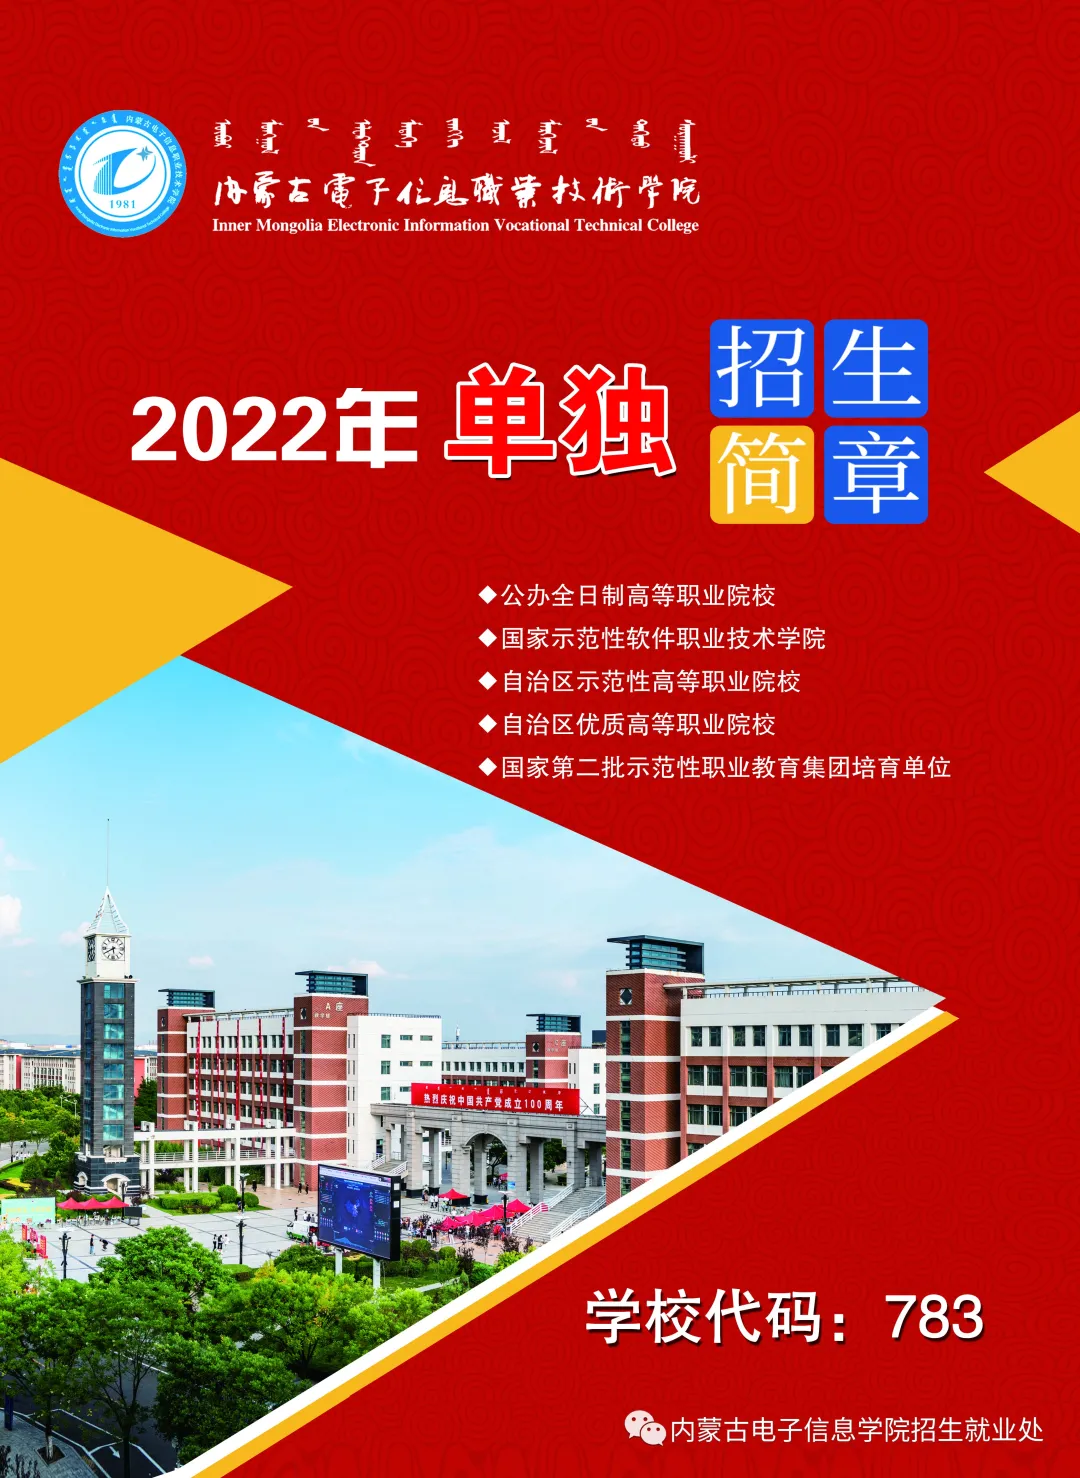 2022年内蒙古电子信息职业技术学院单招简章